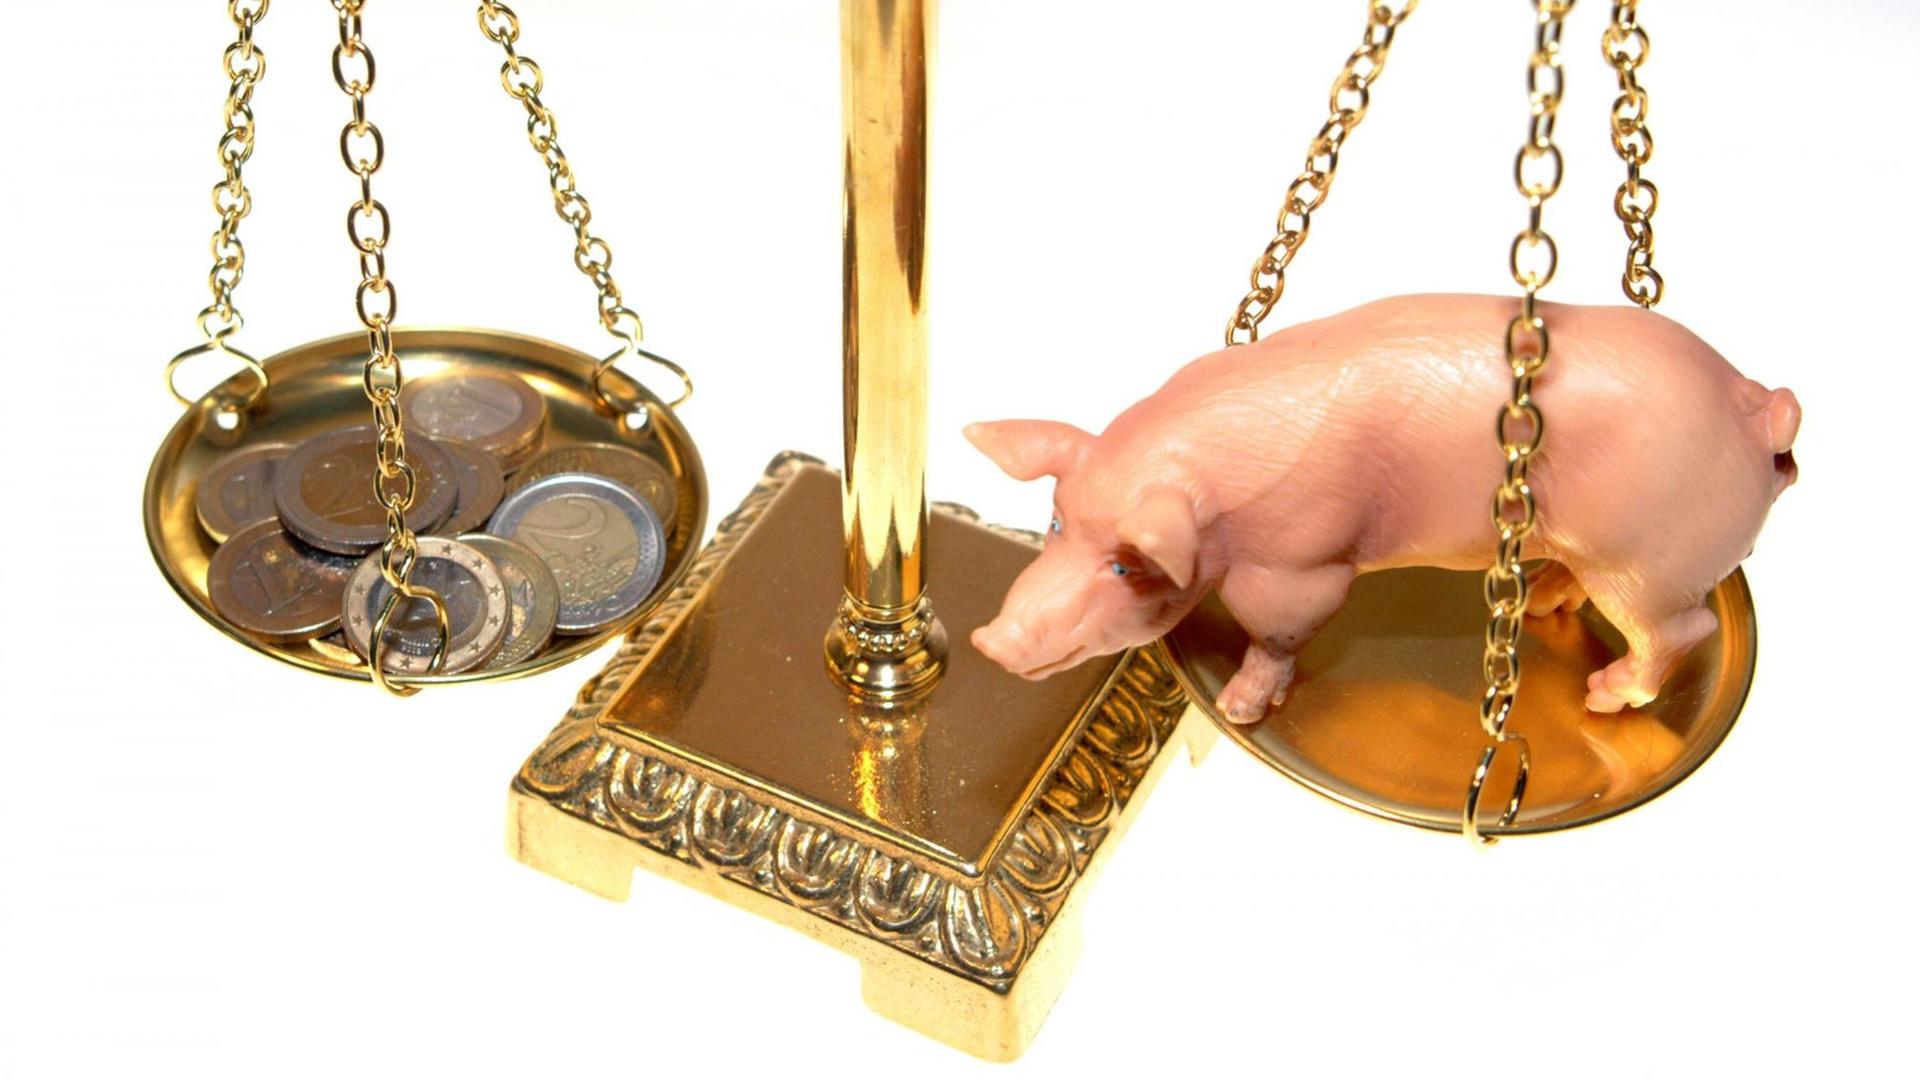 Ein Spielzeugschwein wird auf einer Waage mit Geld aufgewogen